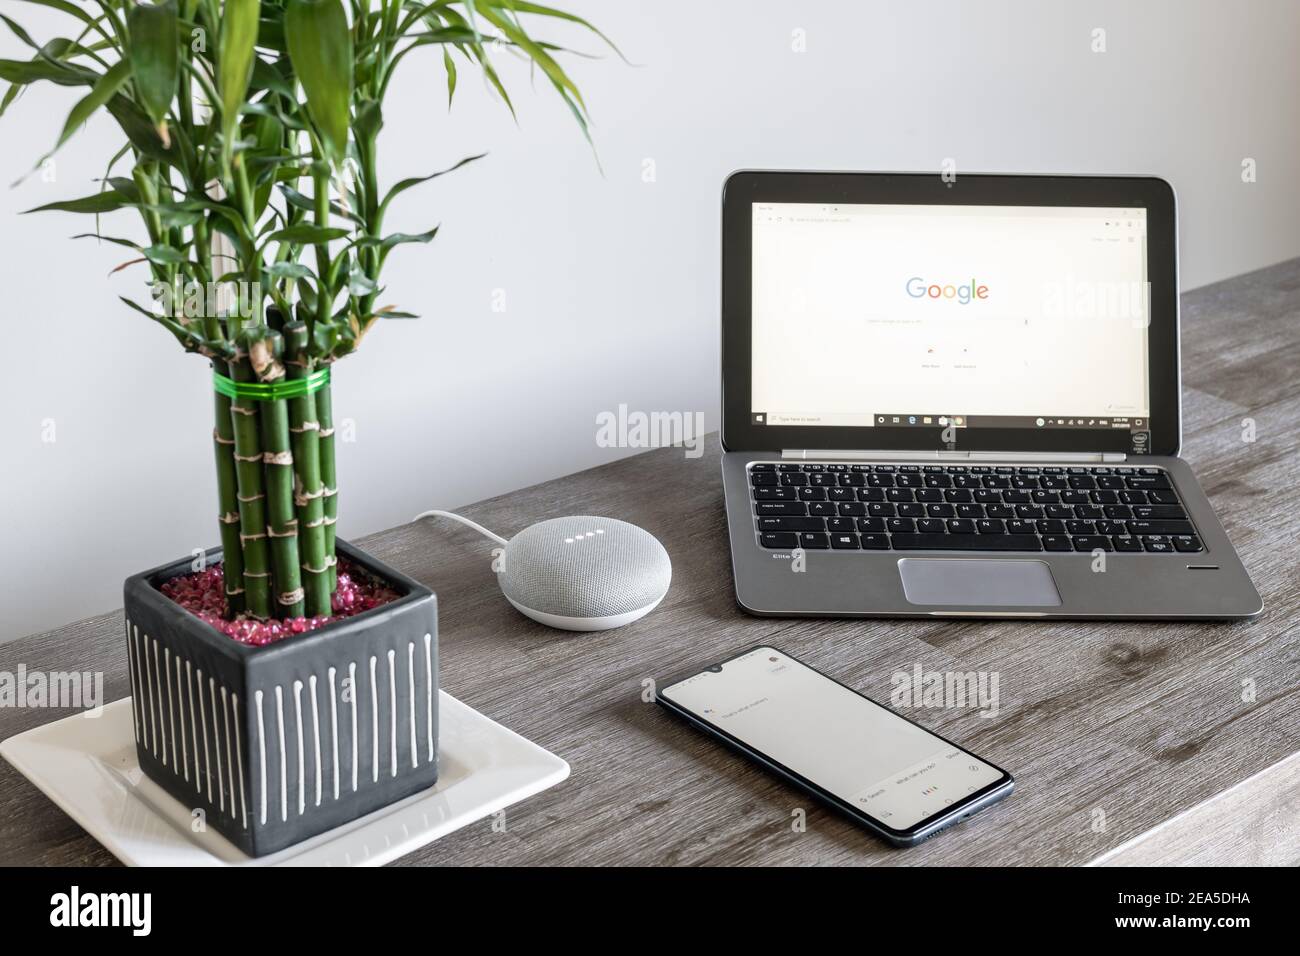 Adelaide, Australien - 7. Juli 2019: Google Home Mini mit HP Laptop mit Windows 10 und Handy auf Tisch nebeneinander eingerichtet Stockfoto